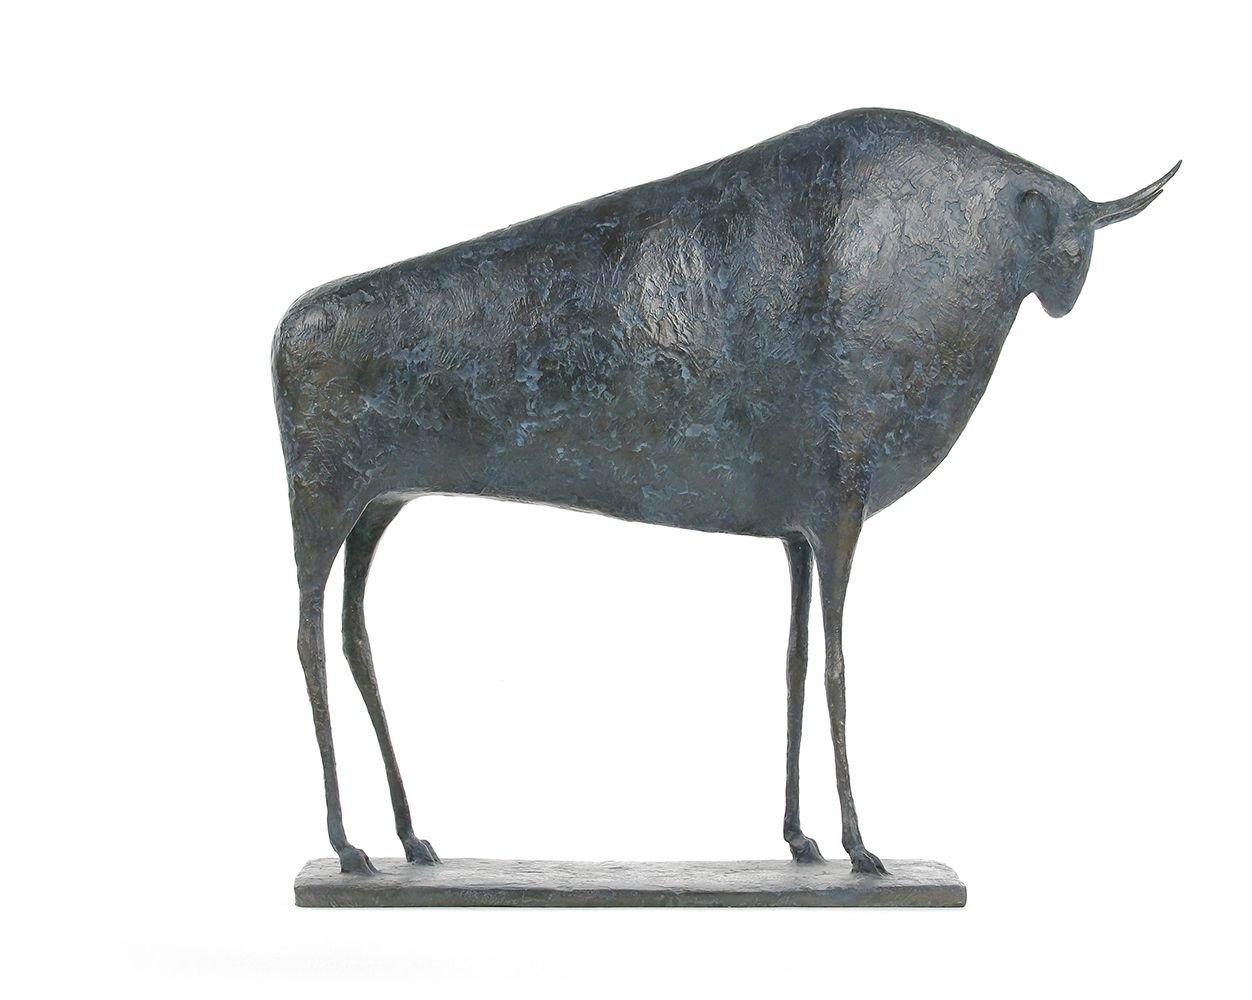 Taureau VI de l'artiste contemporain français Pierre Yermia. Sculpture en bronze, 54 × 47 × 15 cm.
Signés et numérotés. Édition limitée à 8 exemplaires et 4 épreuves d'artiste.
"Le taureau est le seul animal masculin de mon bestiaire. Sa présence